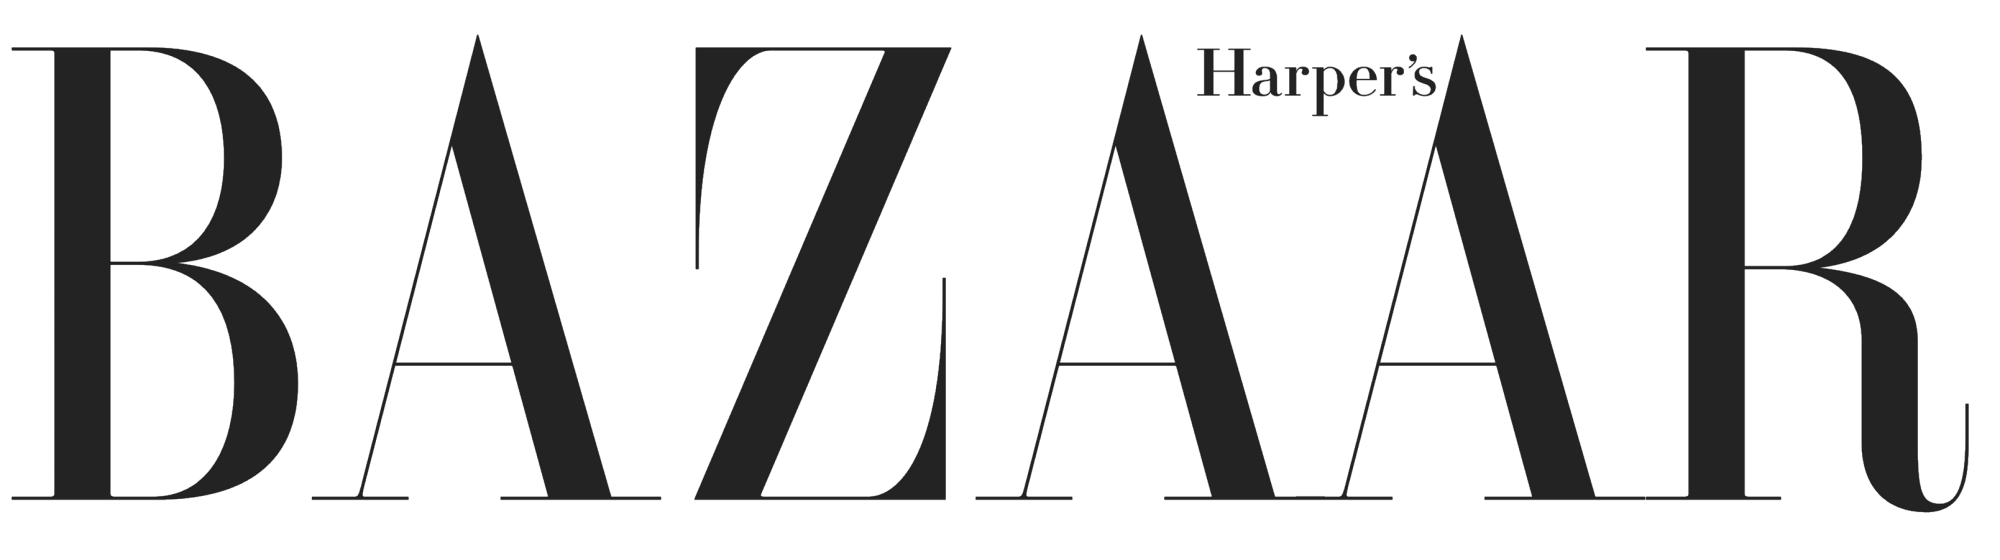 Harpers Bazaar Magazine logo